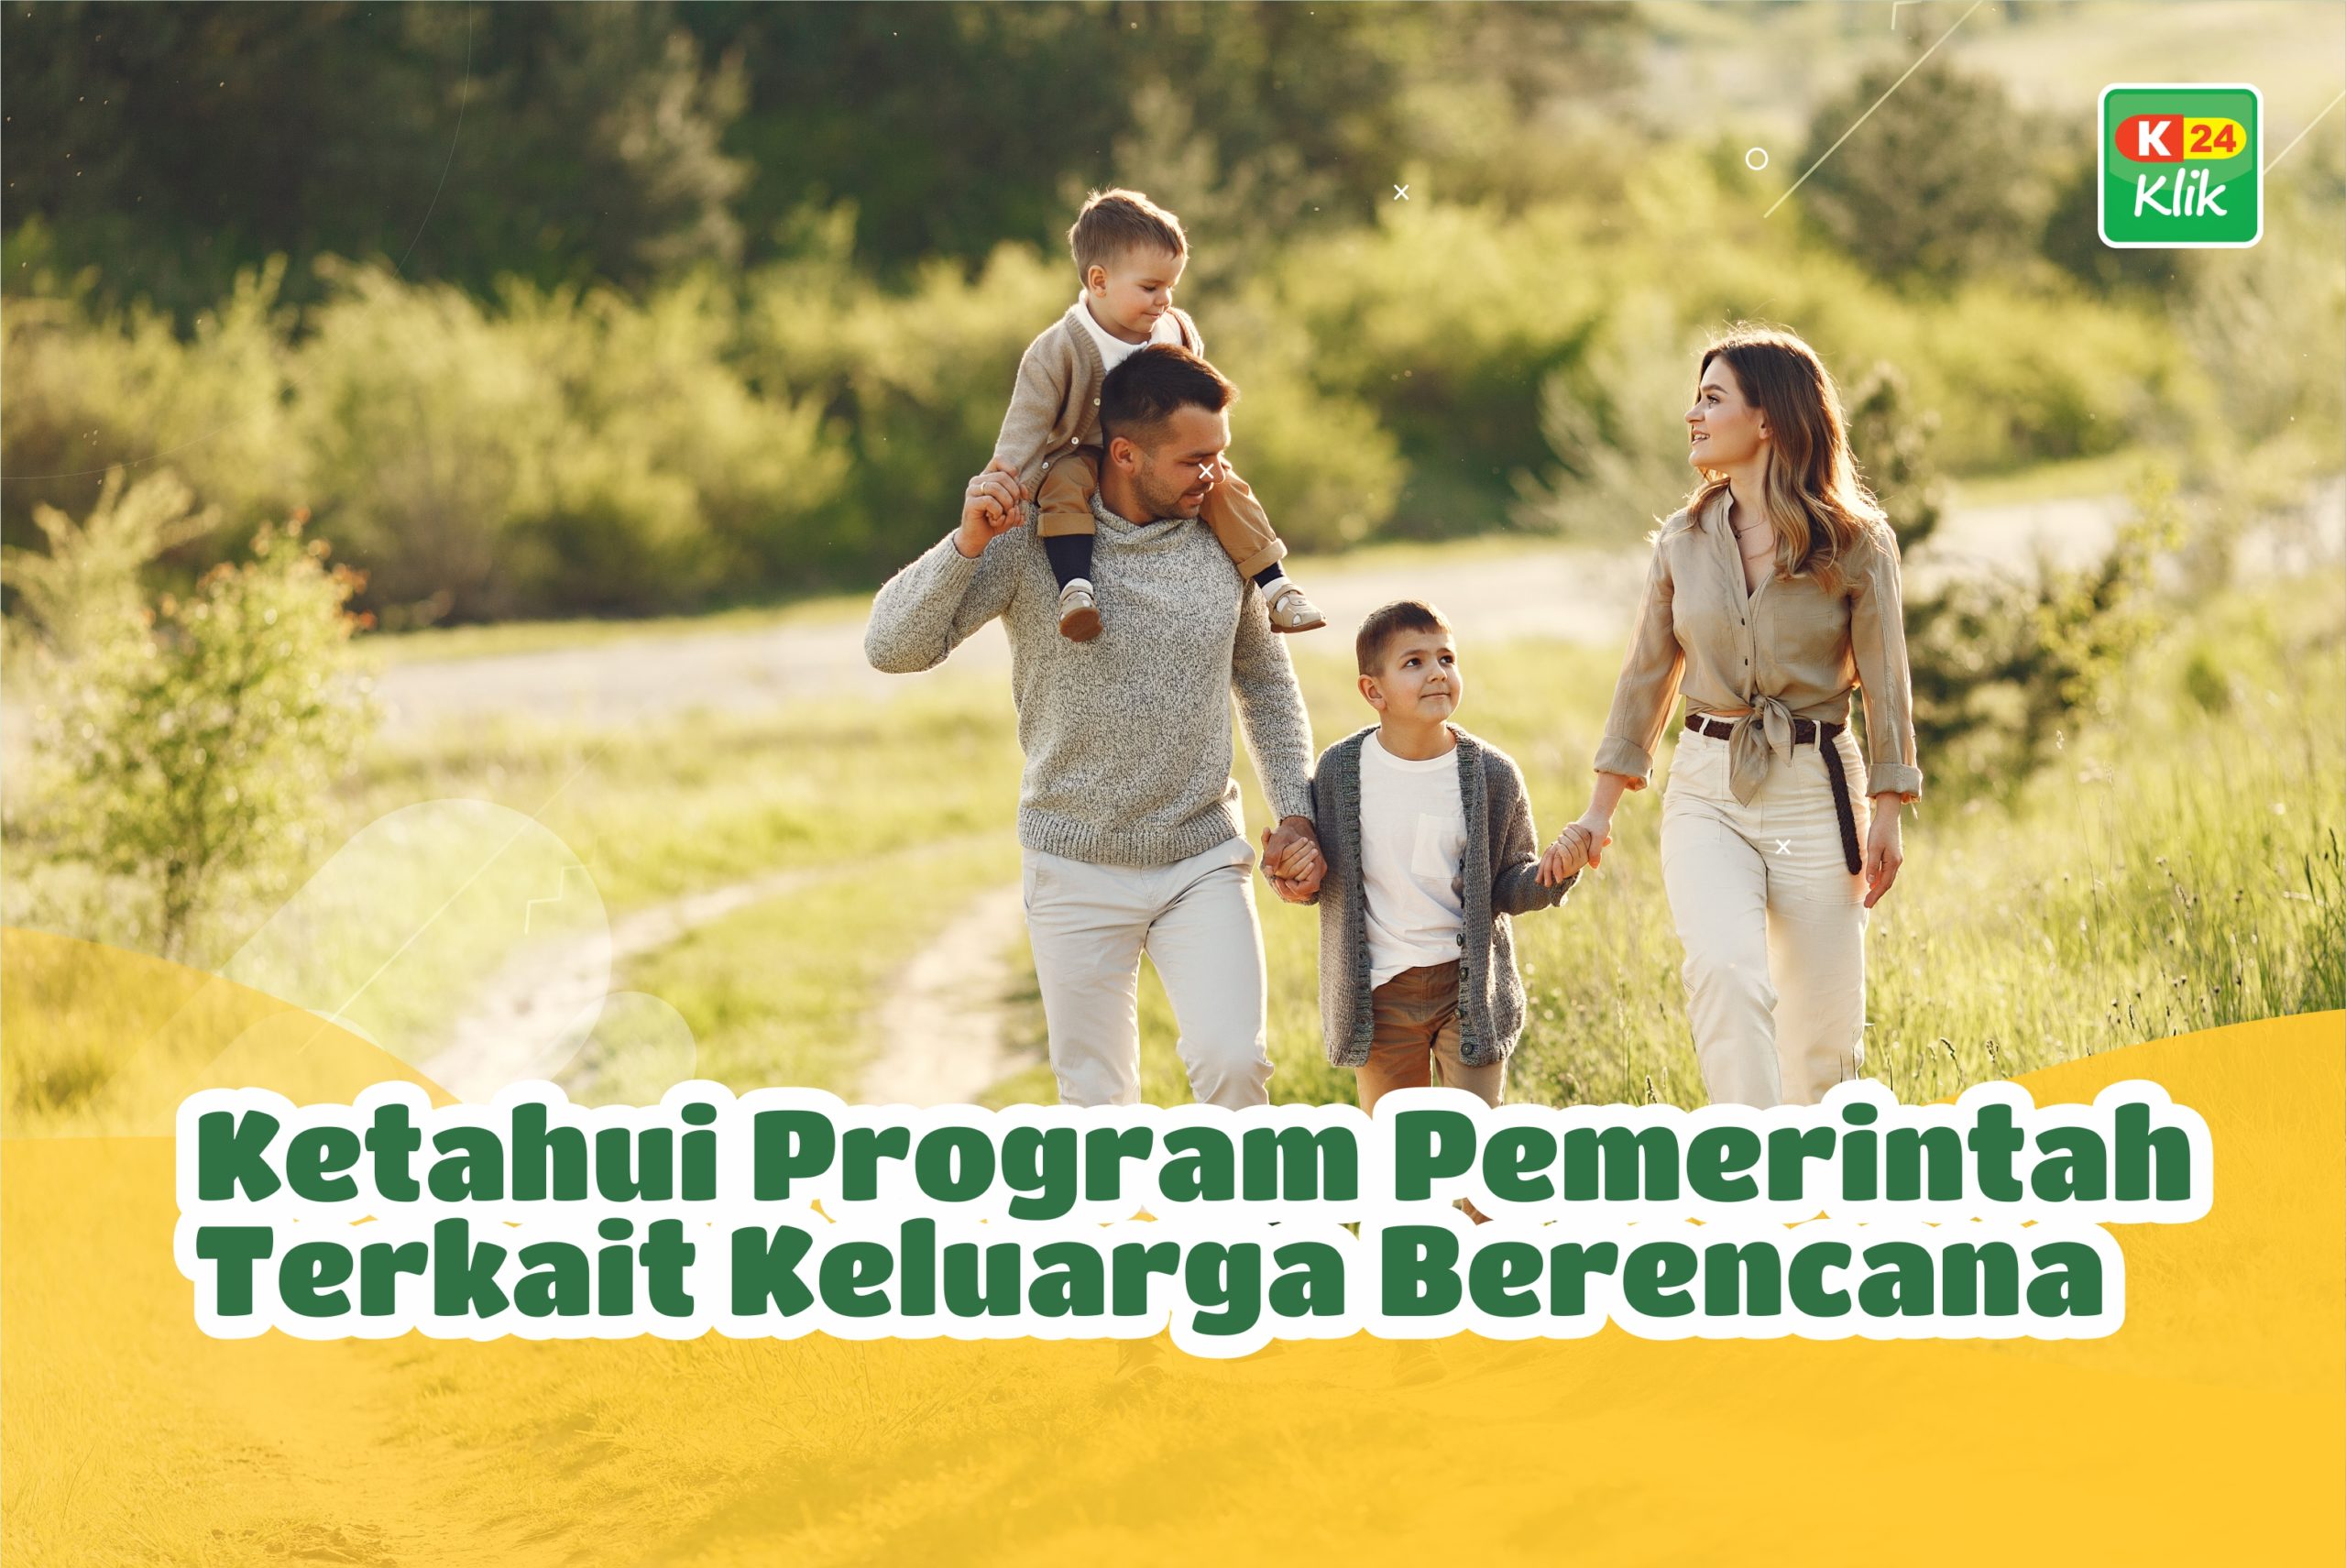 k24klik-program-keluarga-berencana